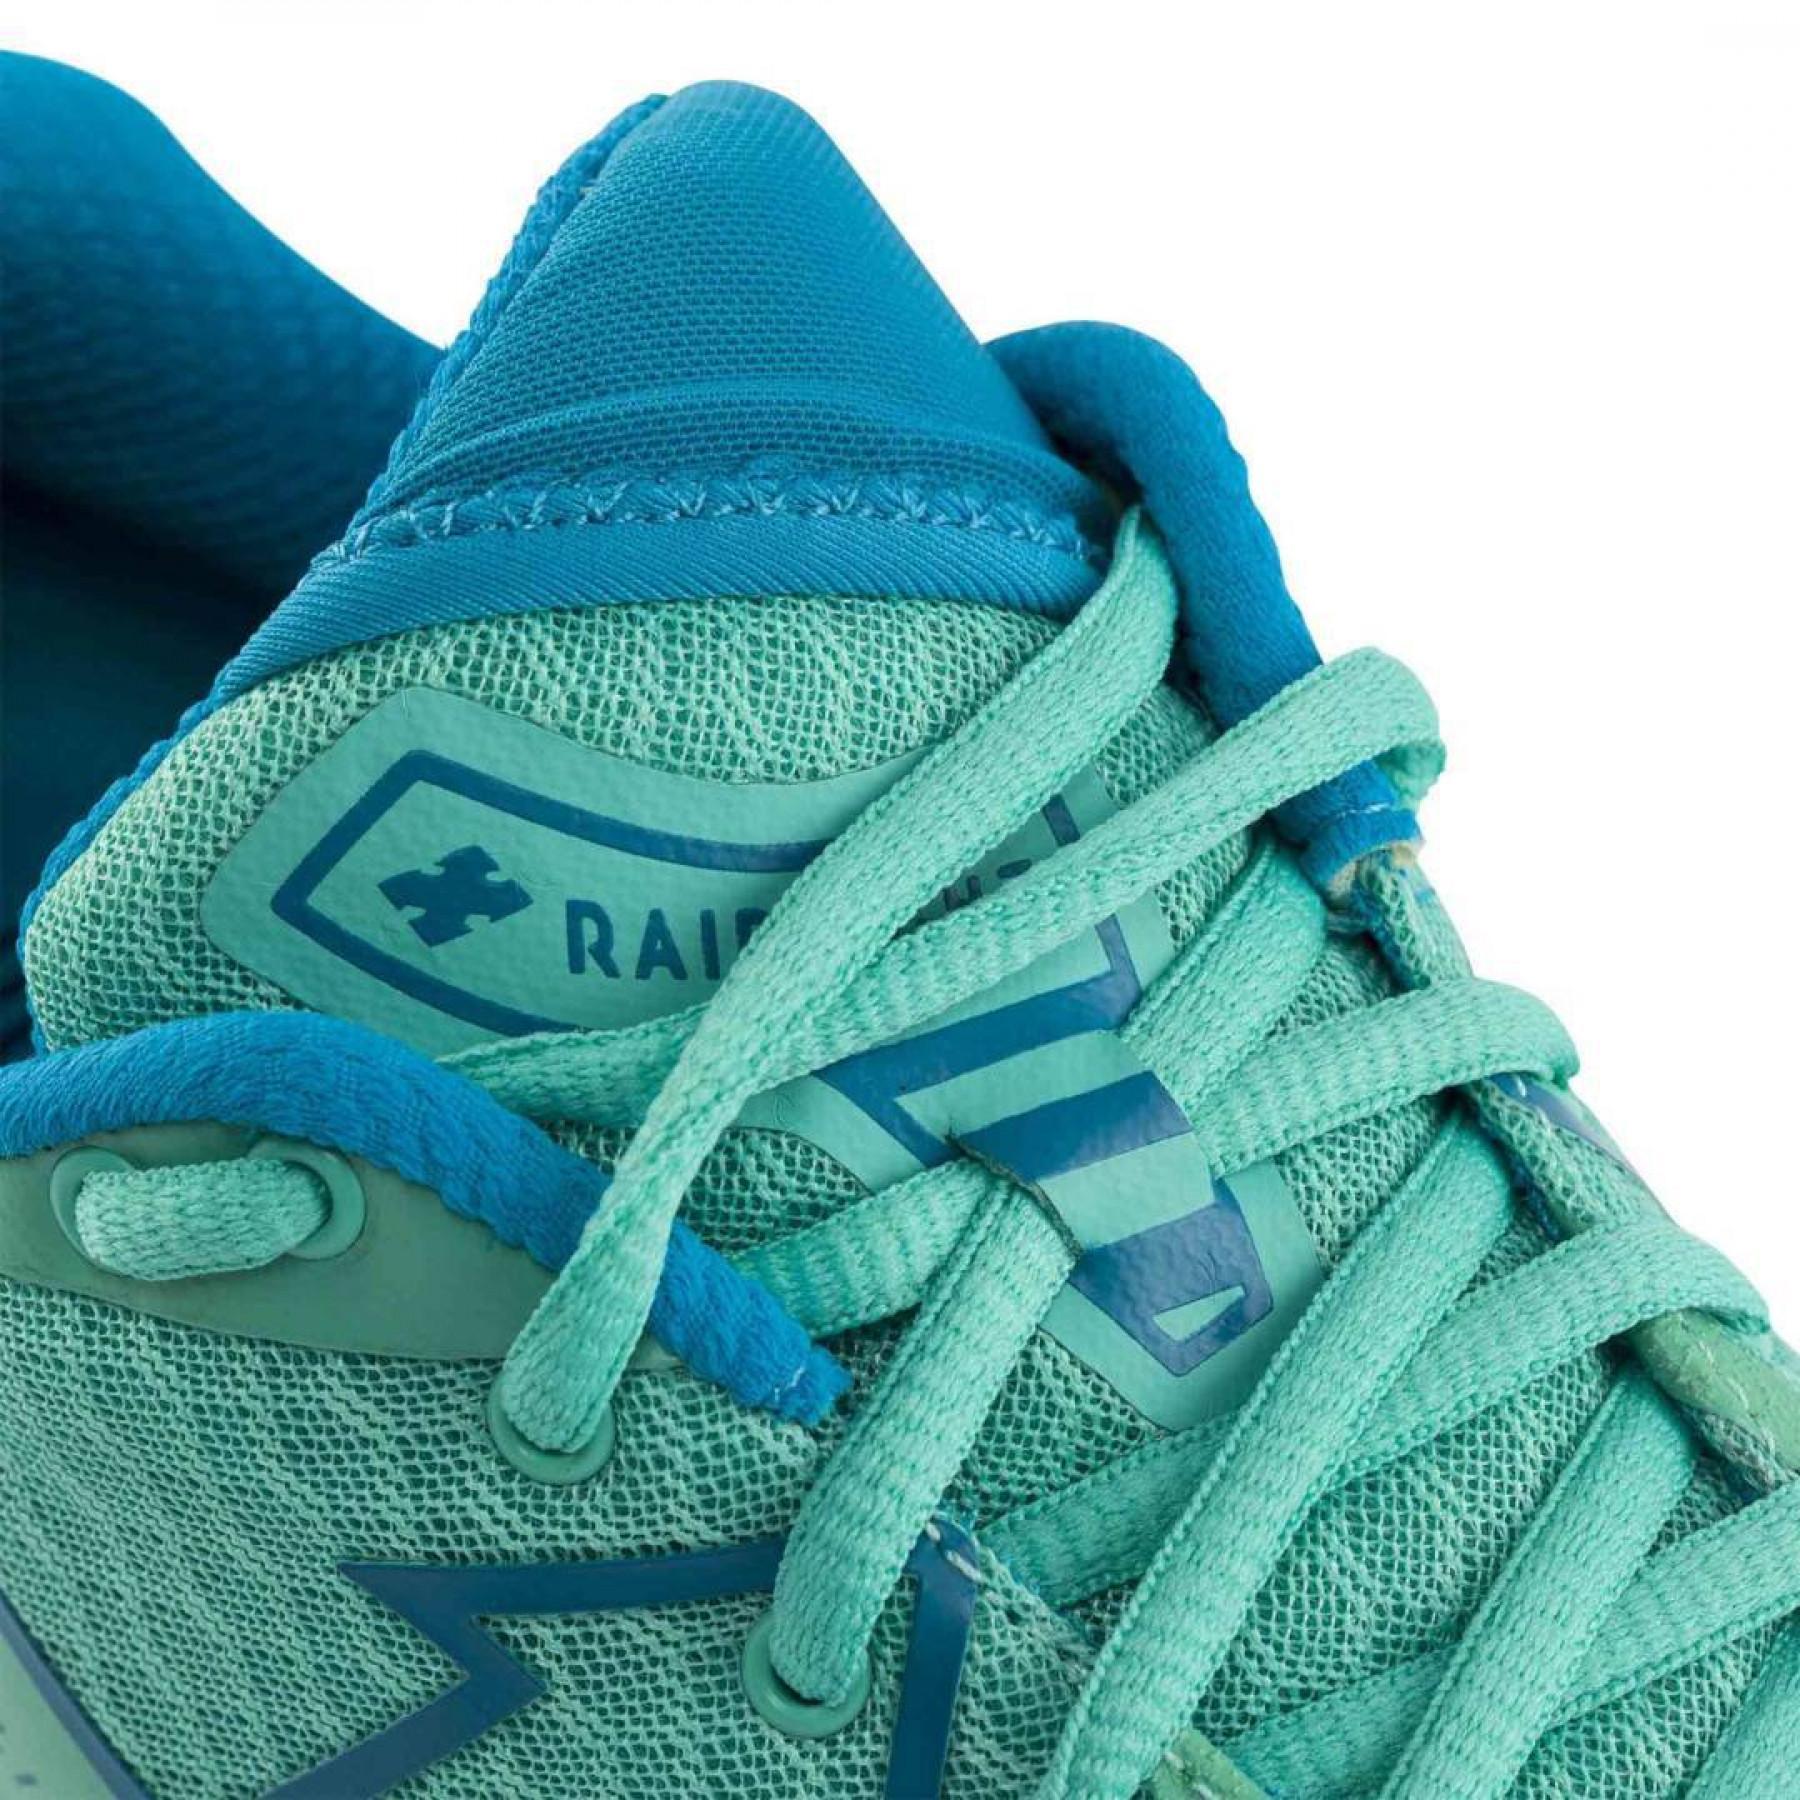 Chaussures de running femme RaidLight responsiv dynamic